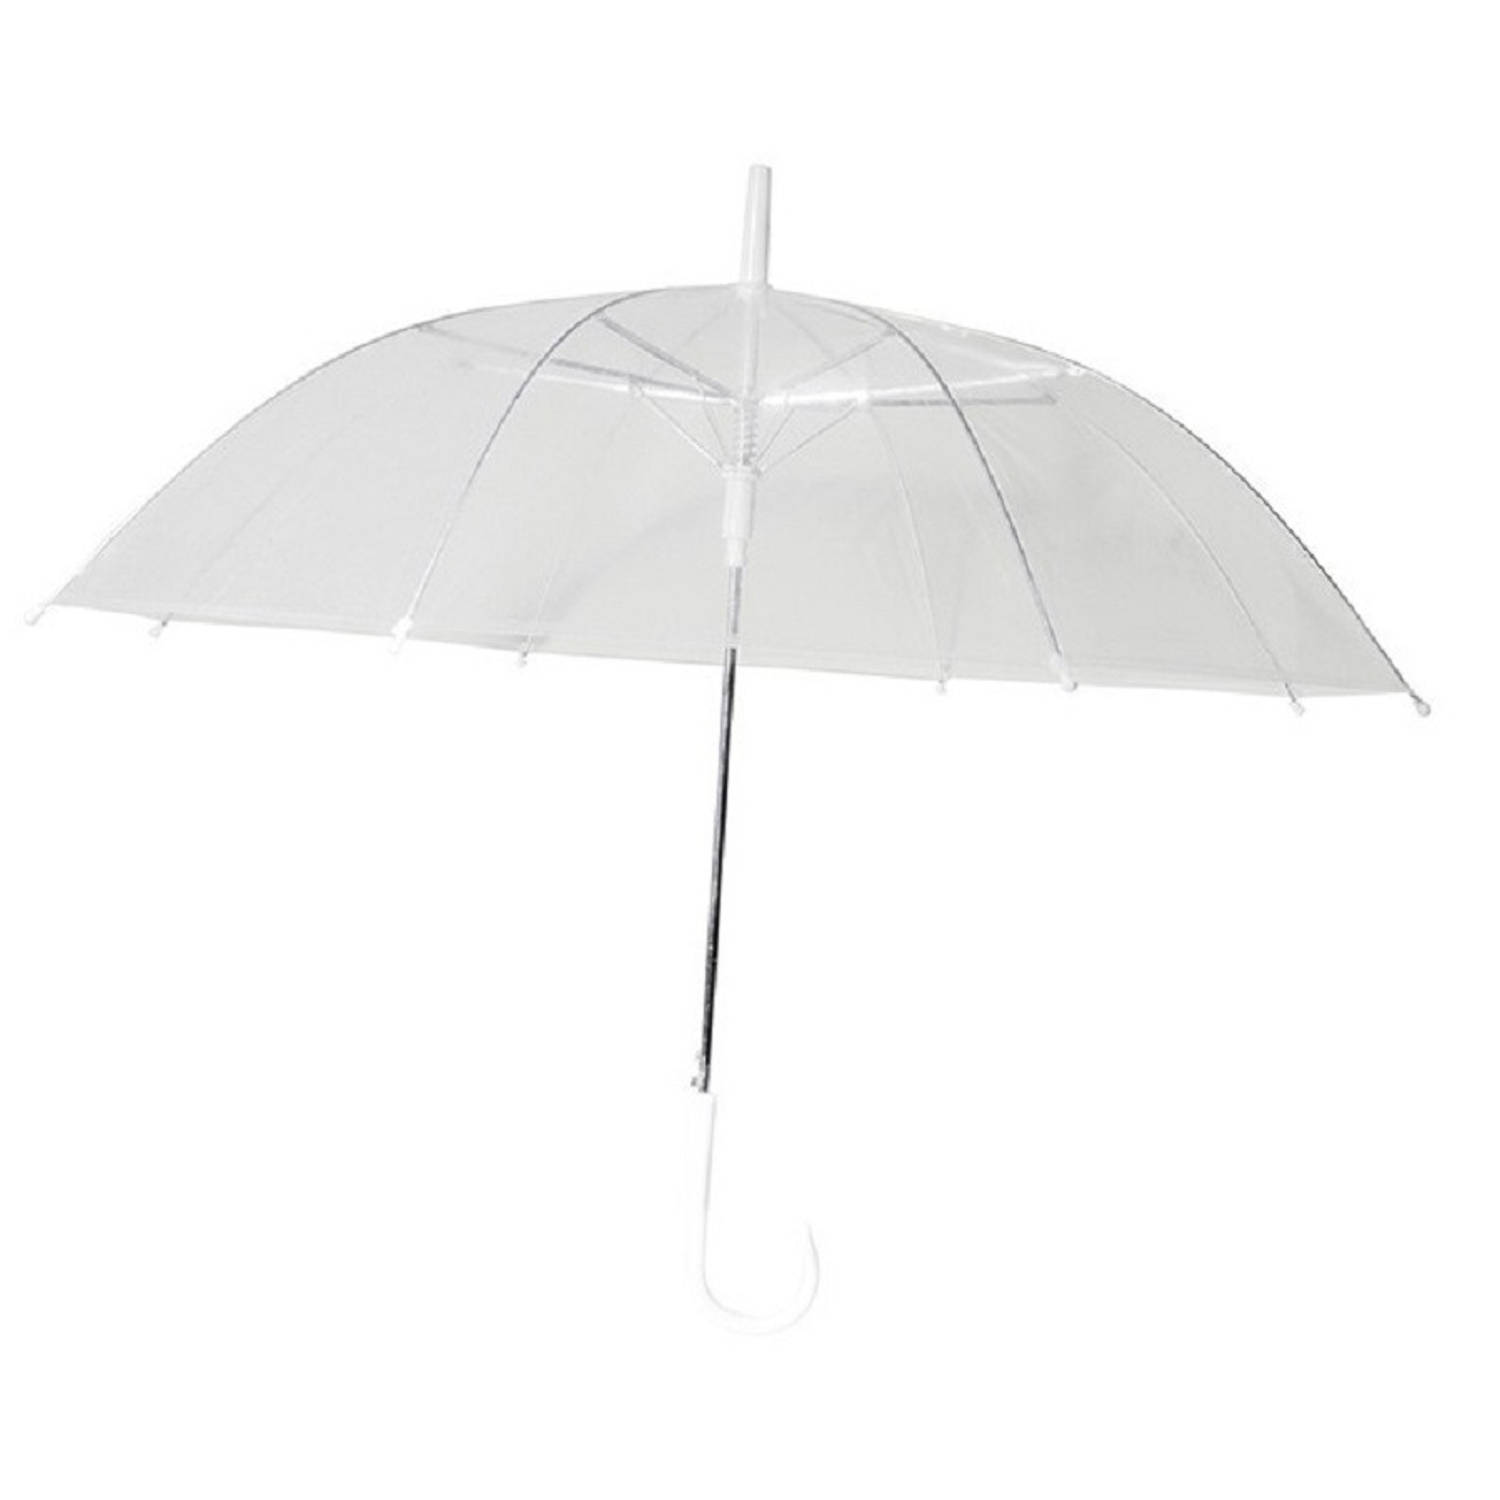 Chaks Paraplu - transparant - wit - polyester - D81 cm - Paraplu's